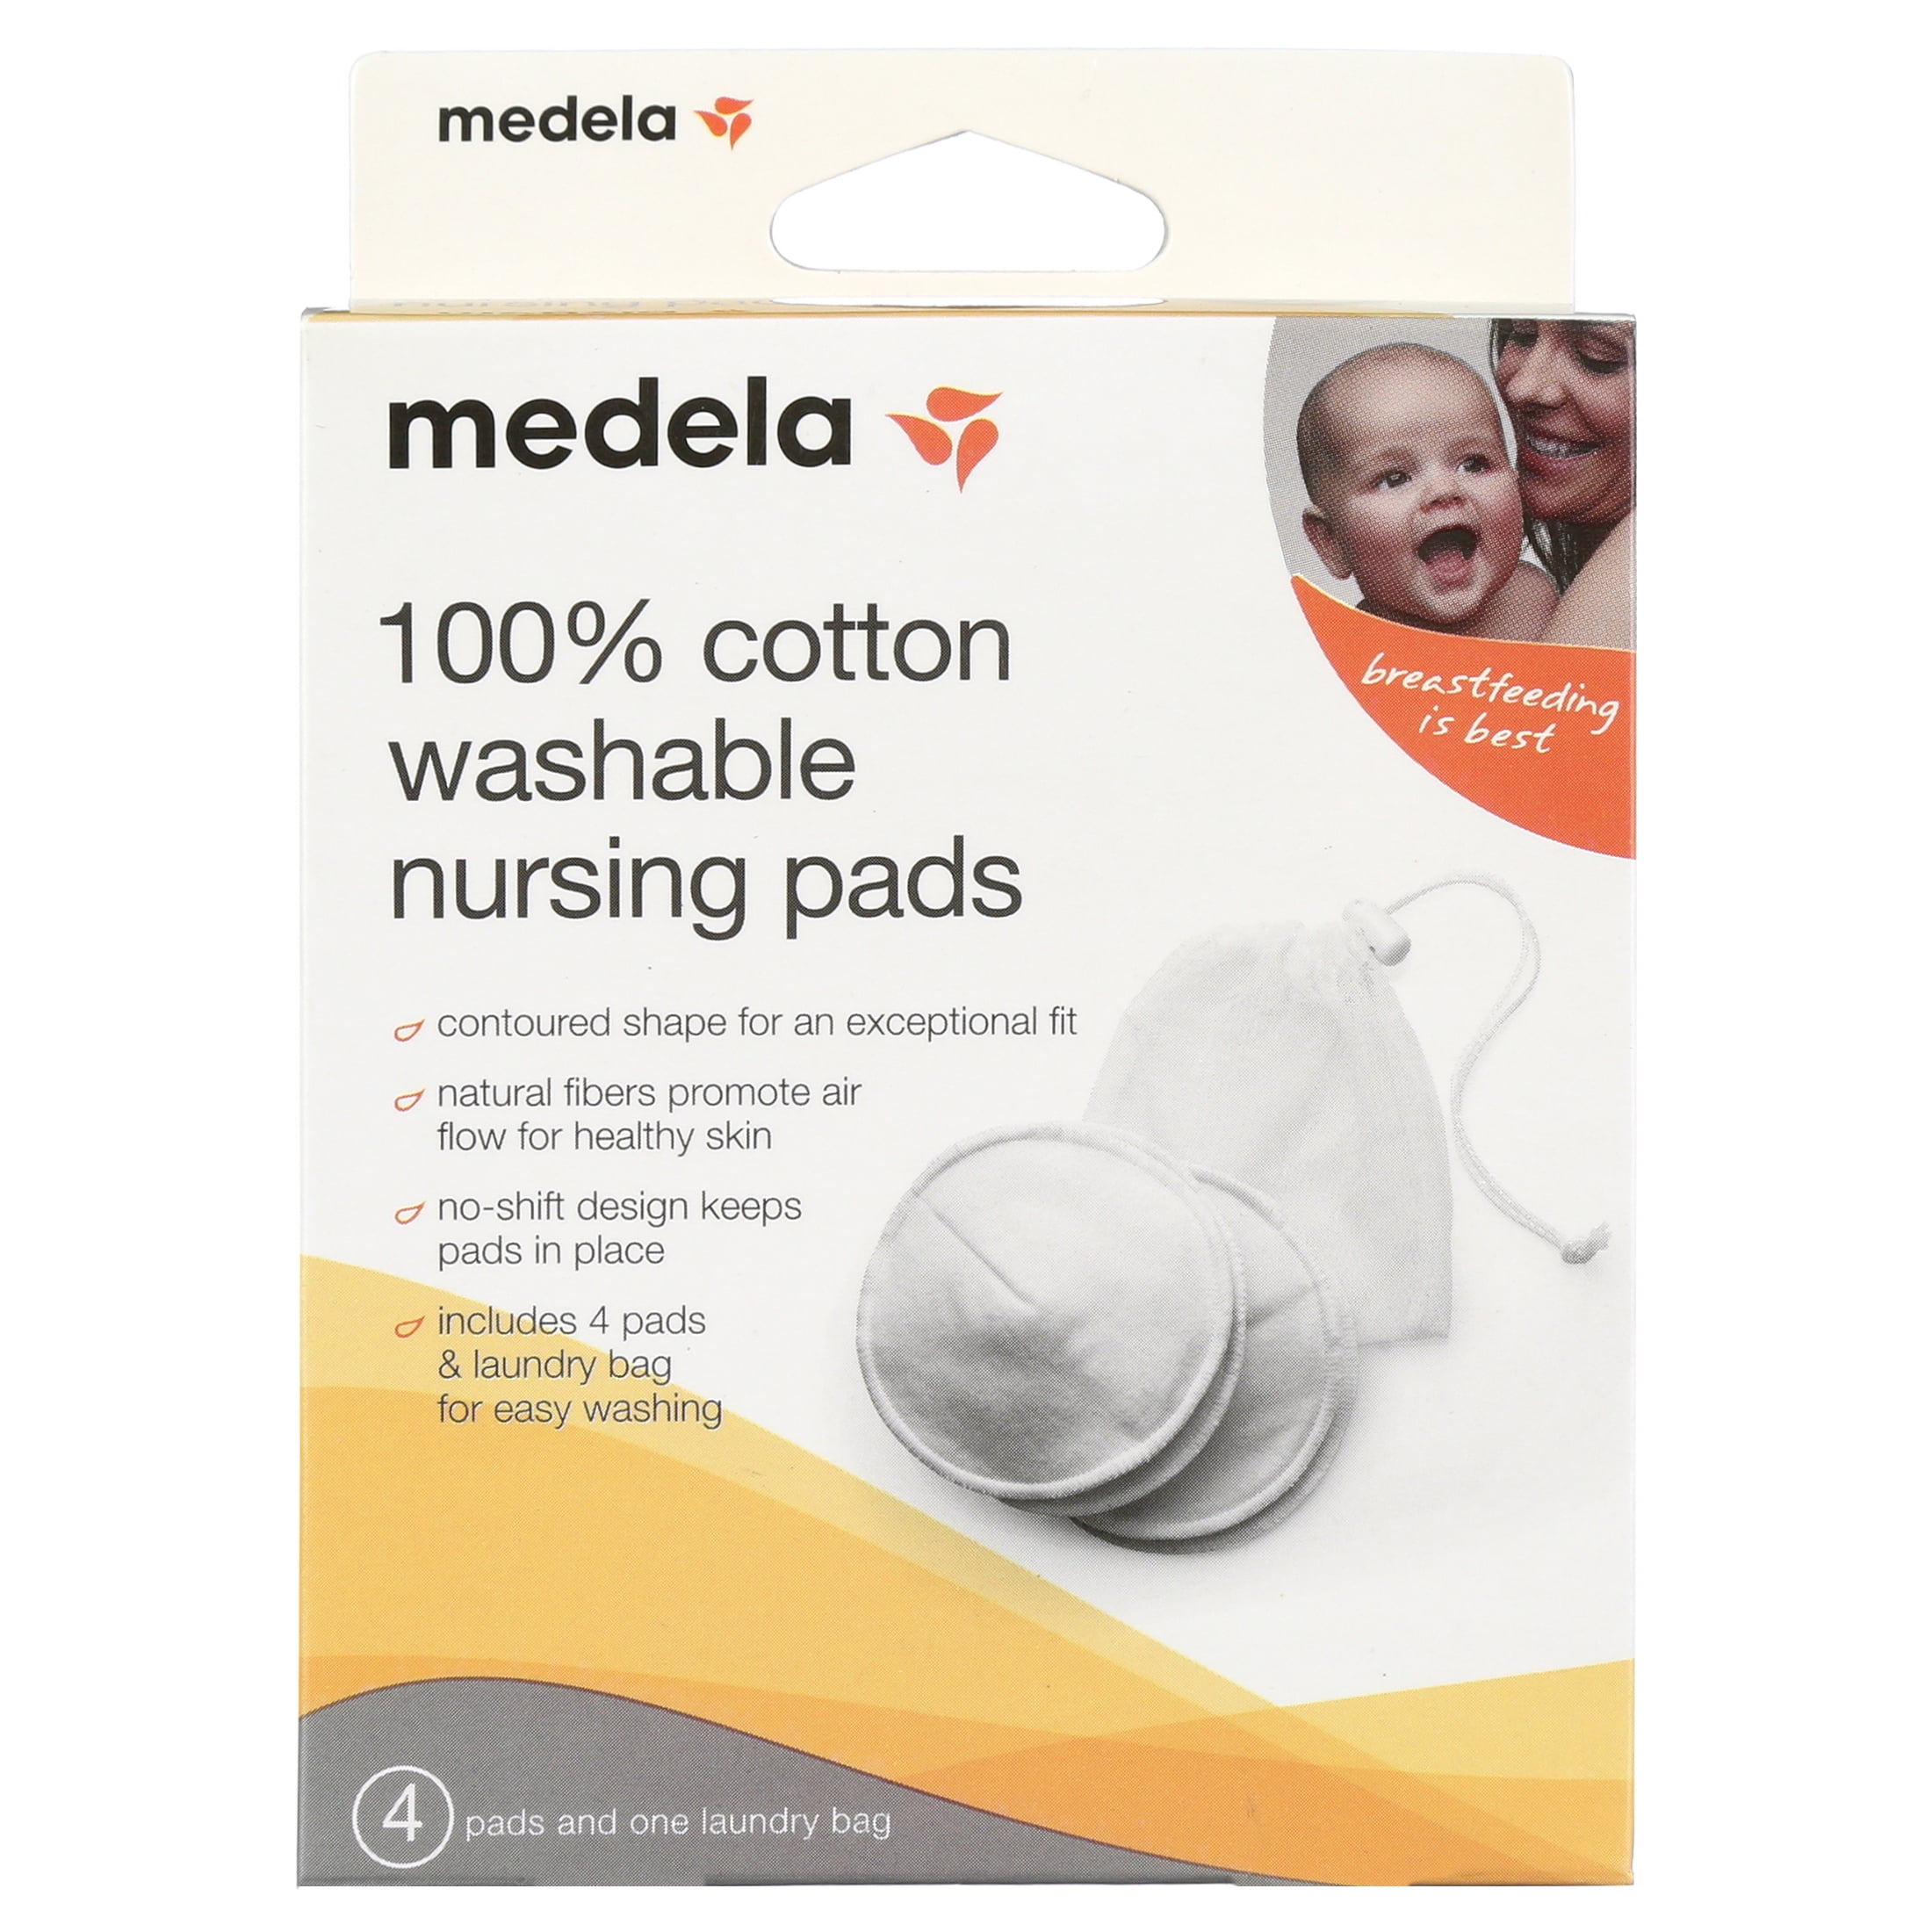 Medela sleep bra 1 Nursing Breast Pad Price in India - Buy Medela